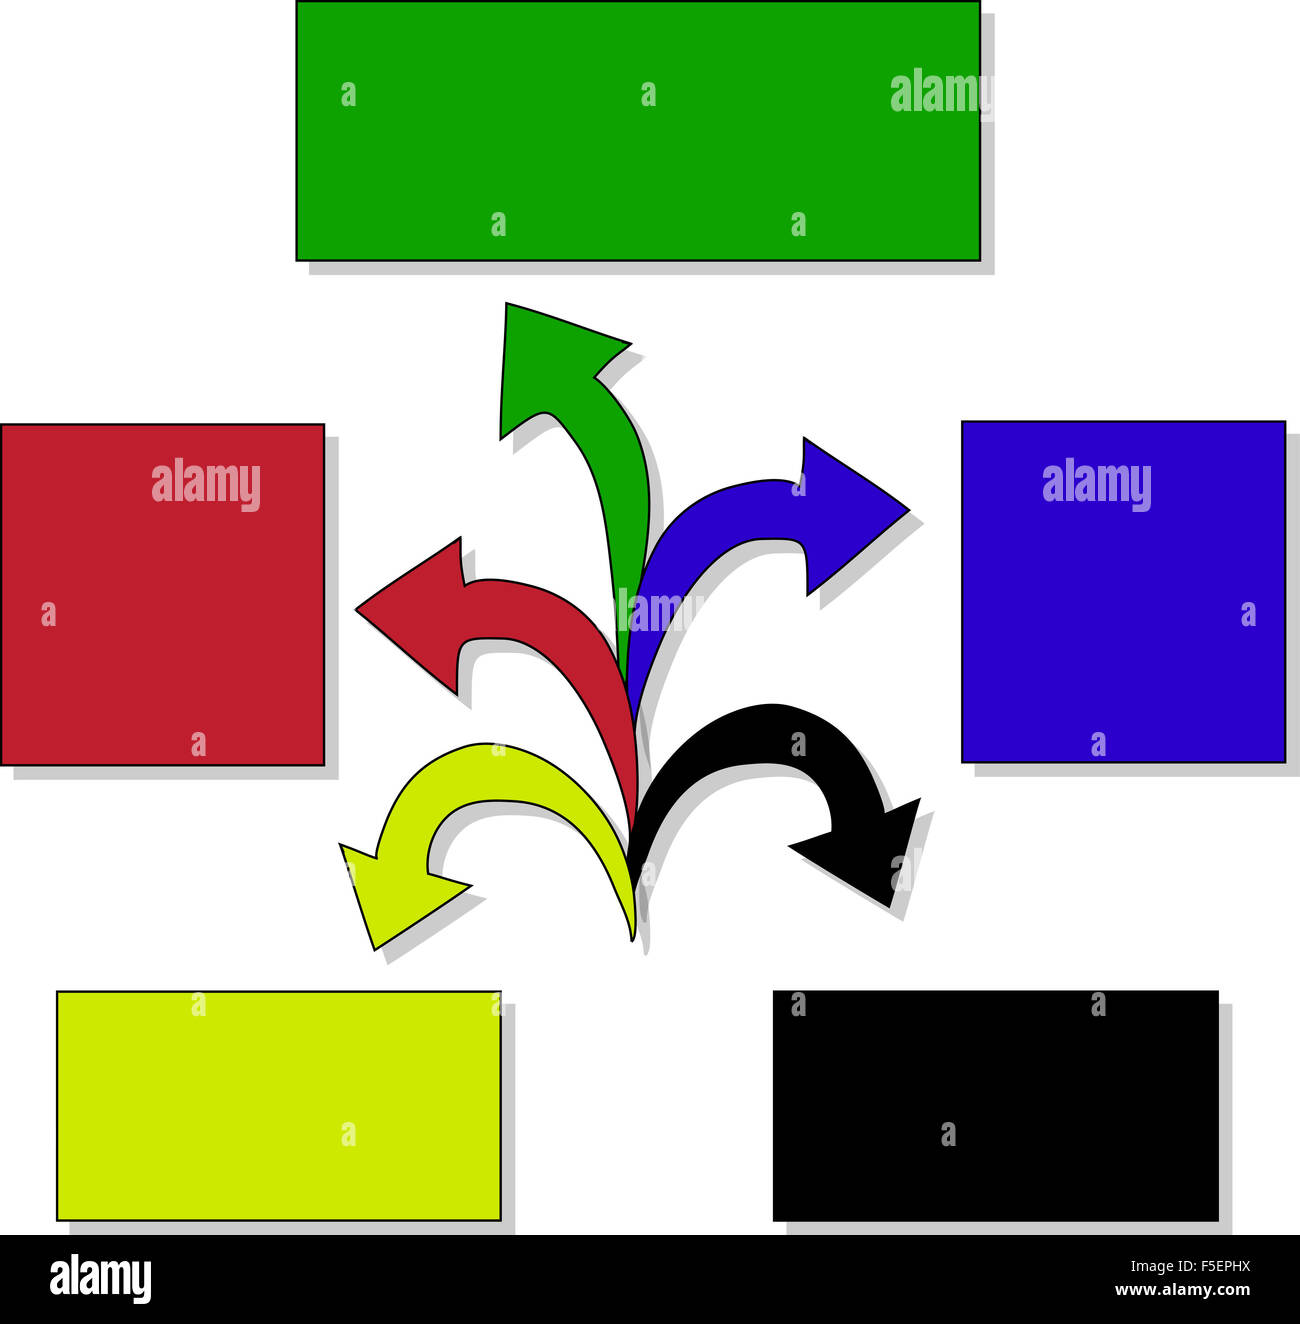 Pfeile Business marketing Infografik-Vorlage. Vektor-Illustration. einsetzbar für Workflow-Layout, Banner, Diagramm, Nummer op Stockfoto